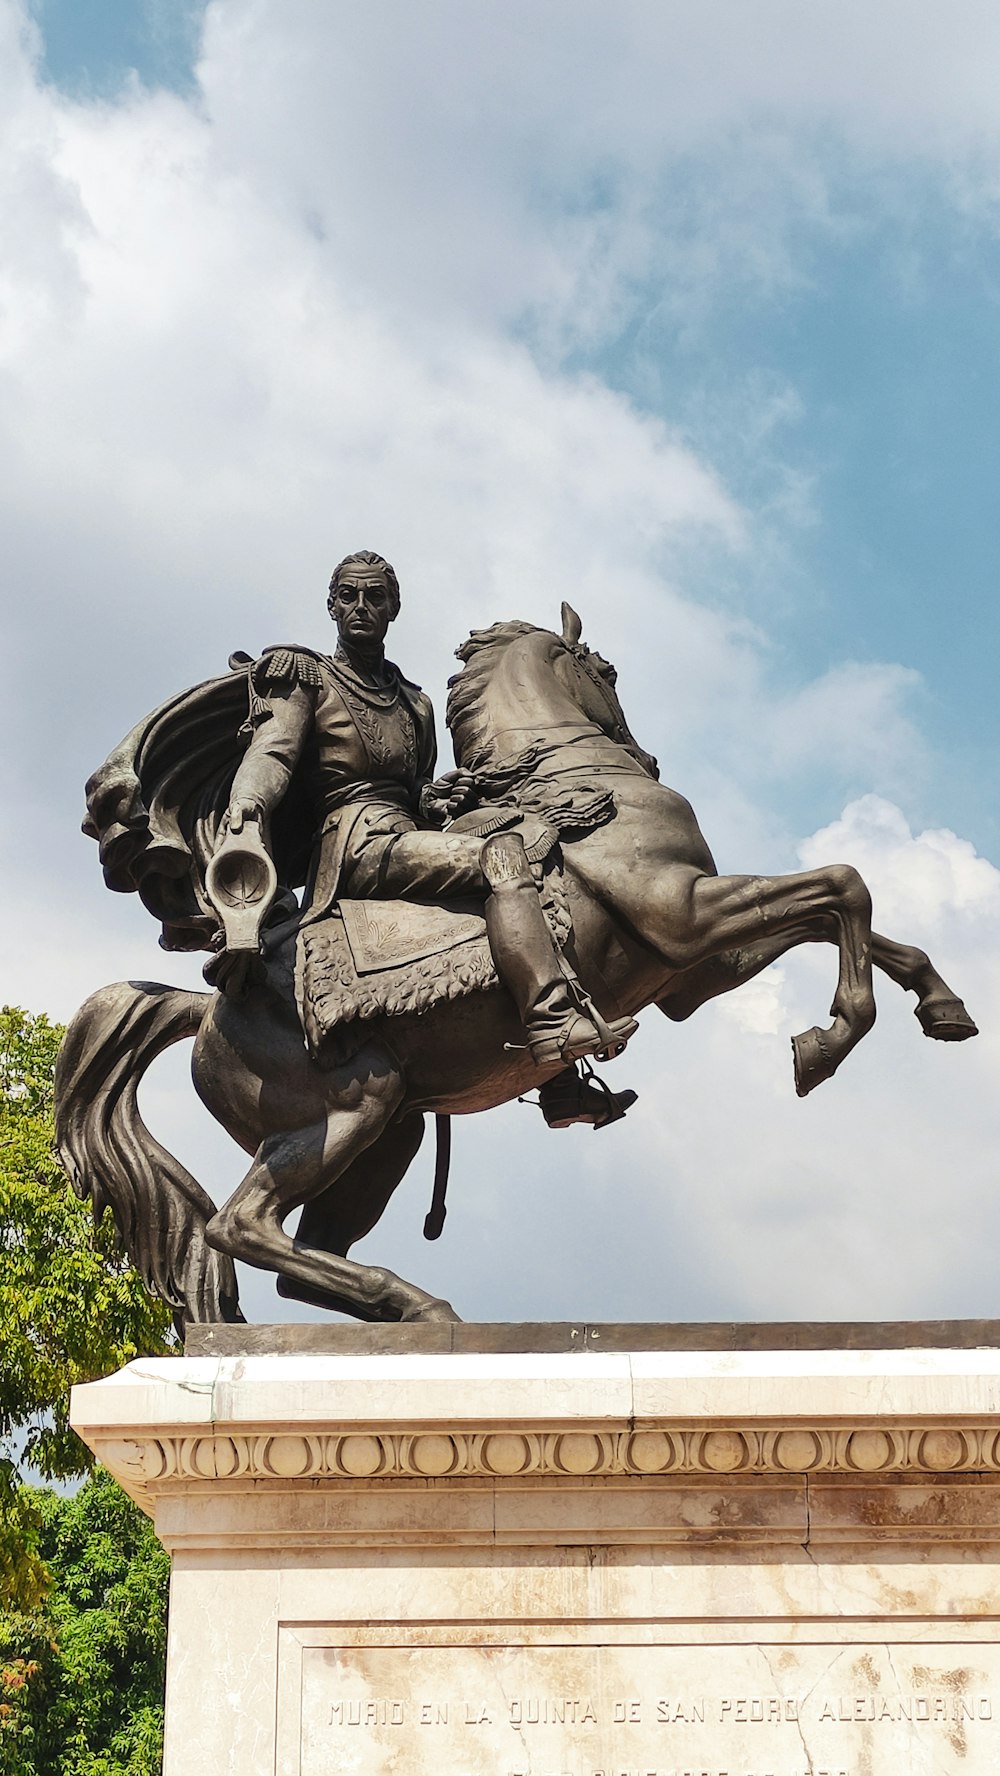 Eine Statue eines Mannes, der auf einem Pferd reitet